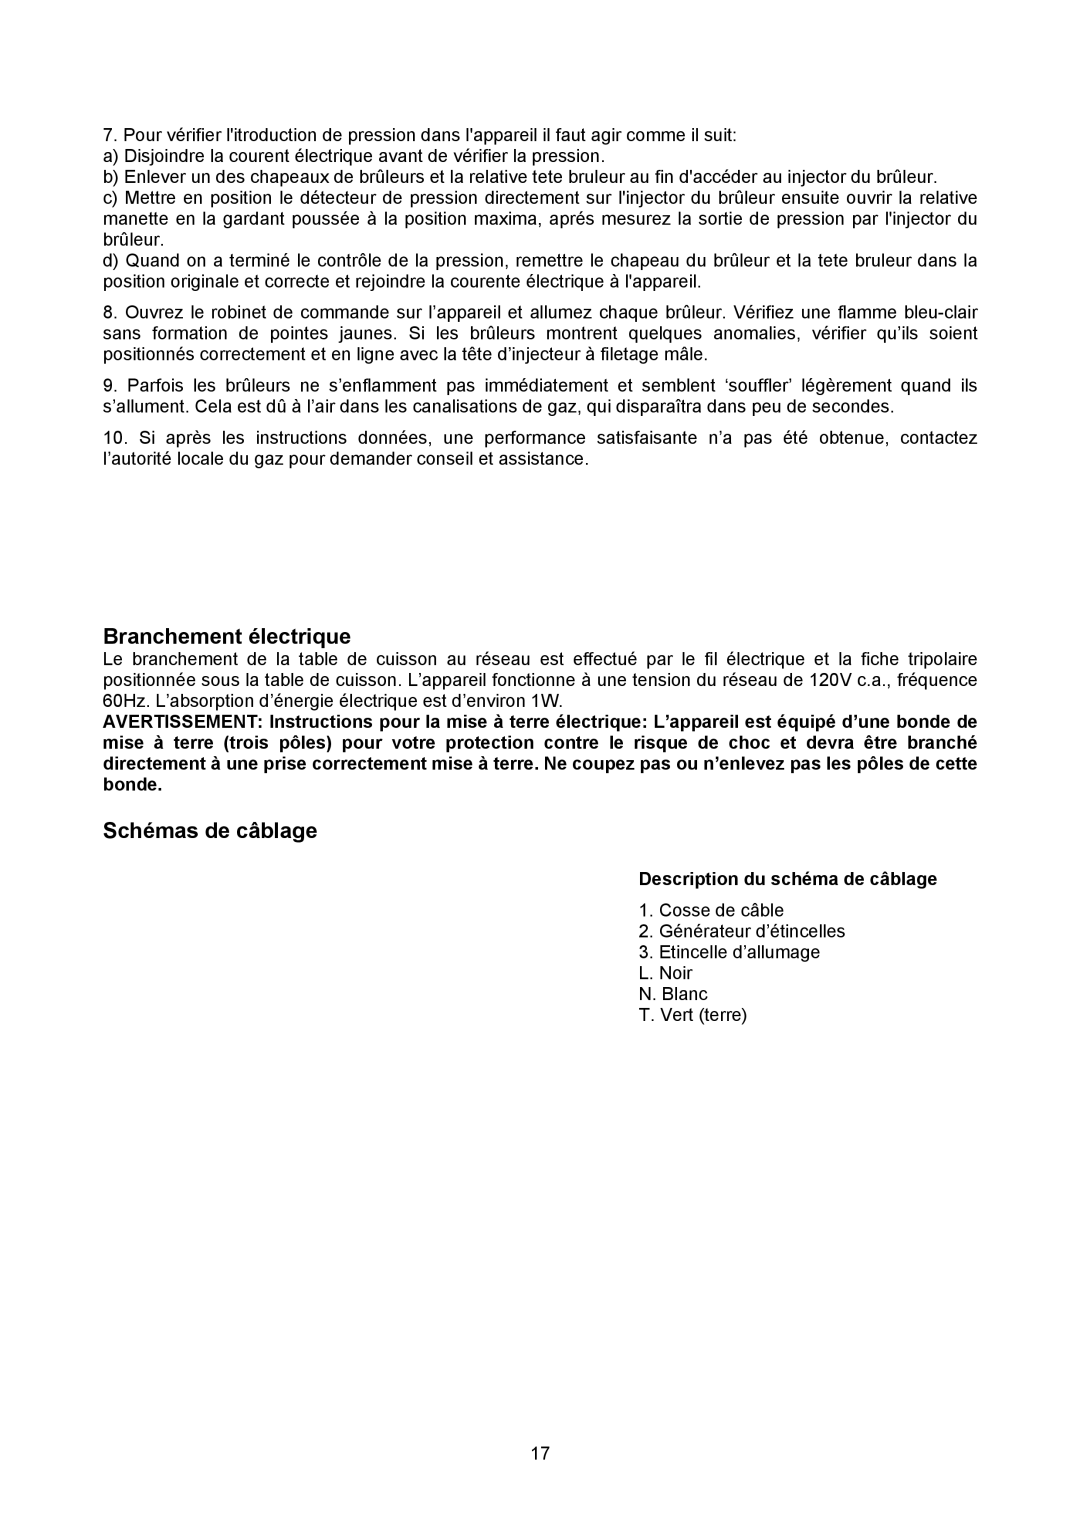 Bertazzoni P24 4 00 X manual Branchement électrique, Schémas de câblage, Description du schéma de câblage 